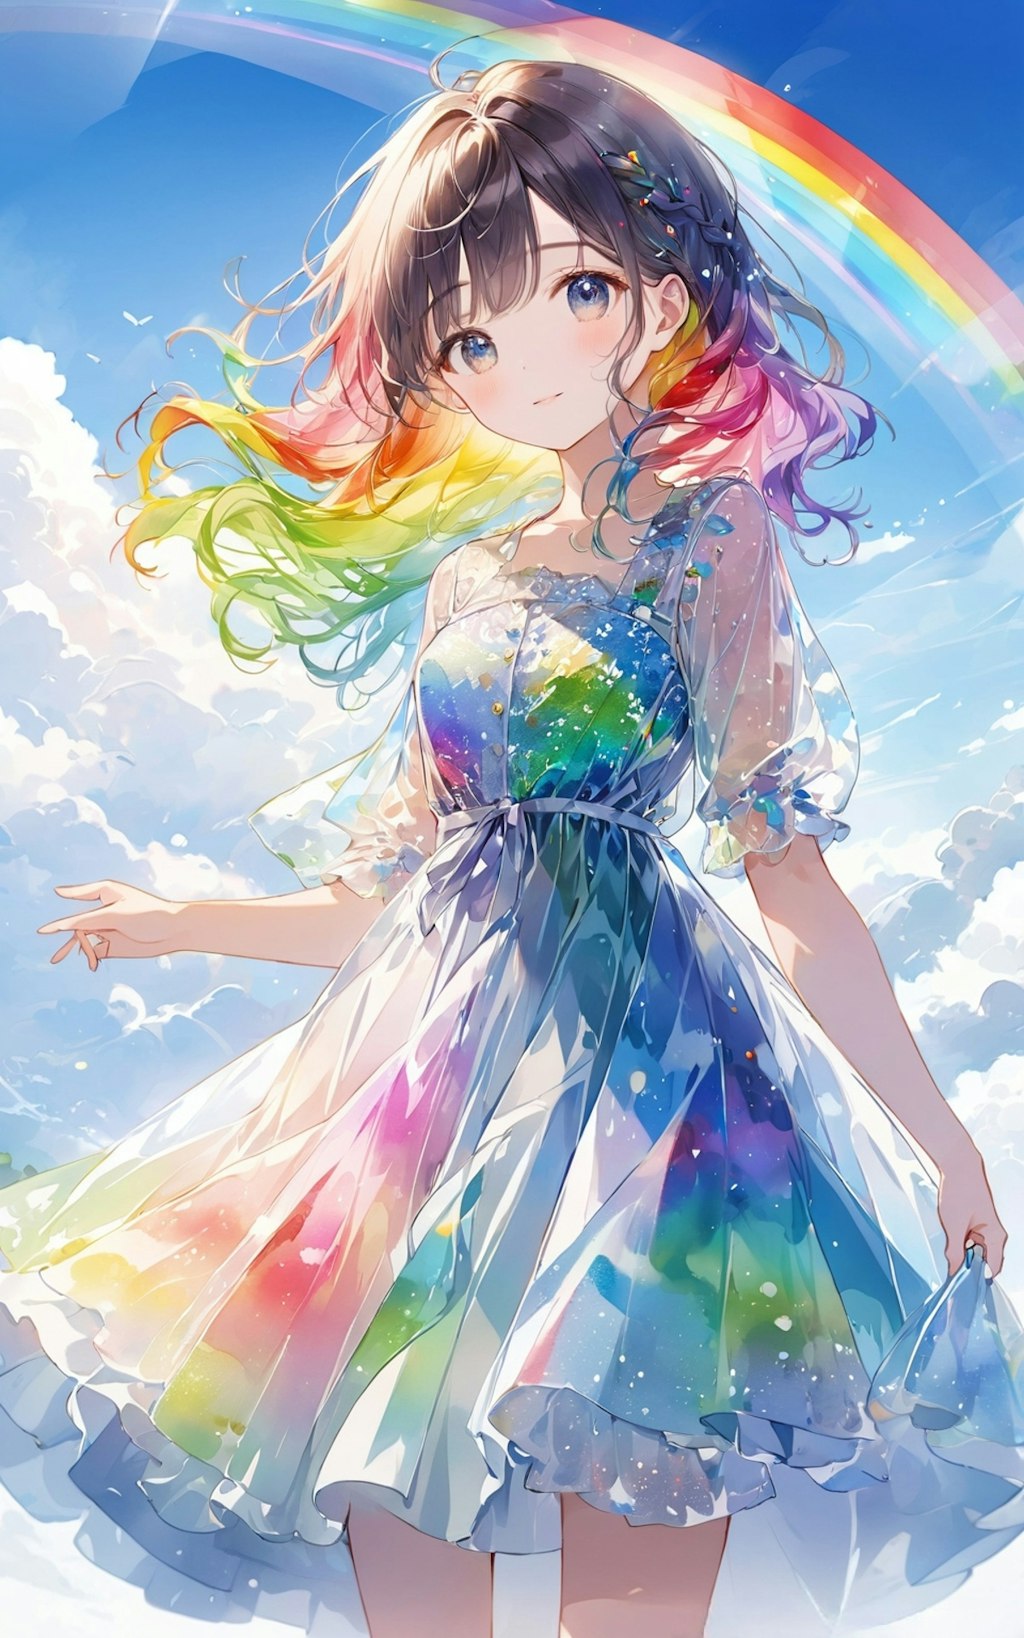 虹のドレス。